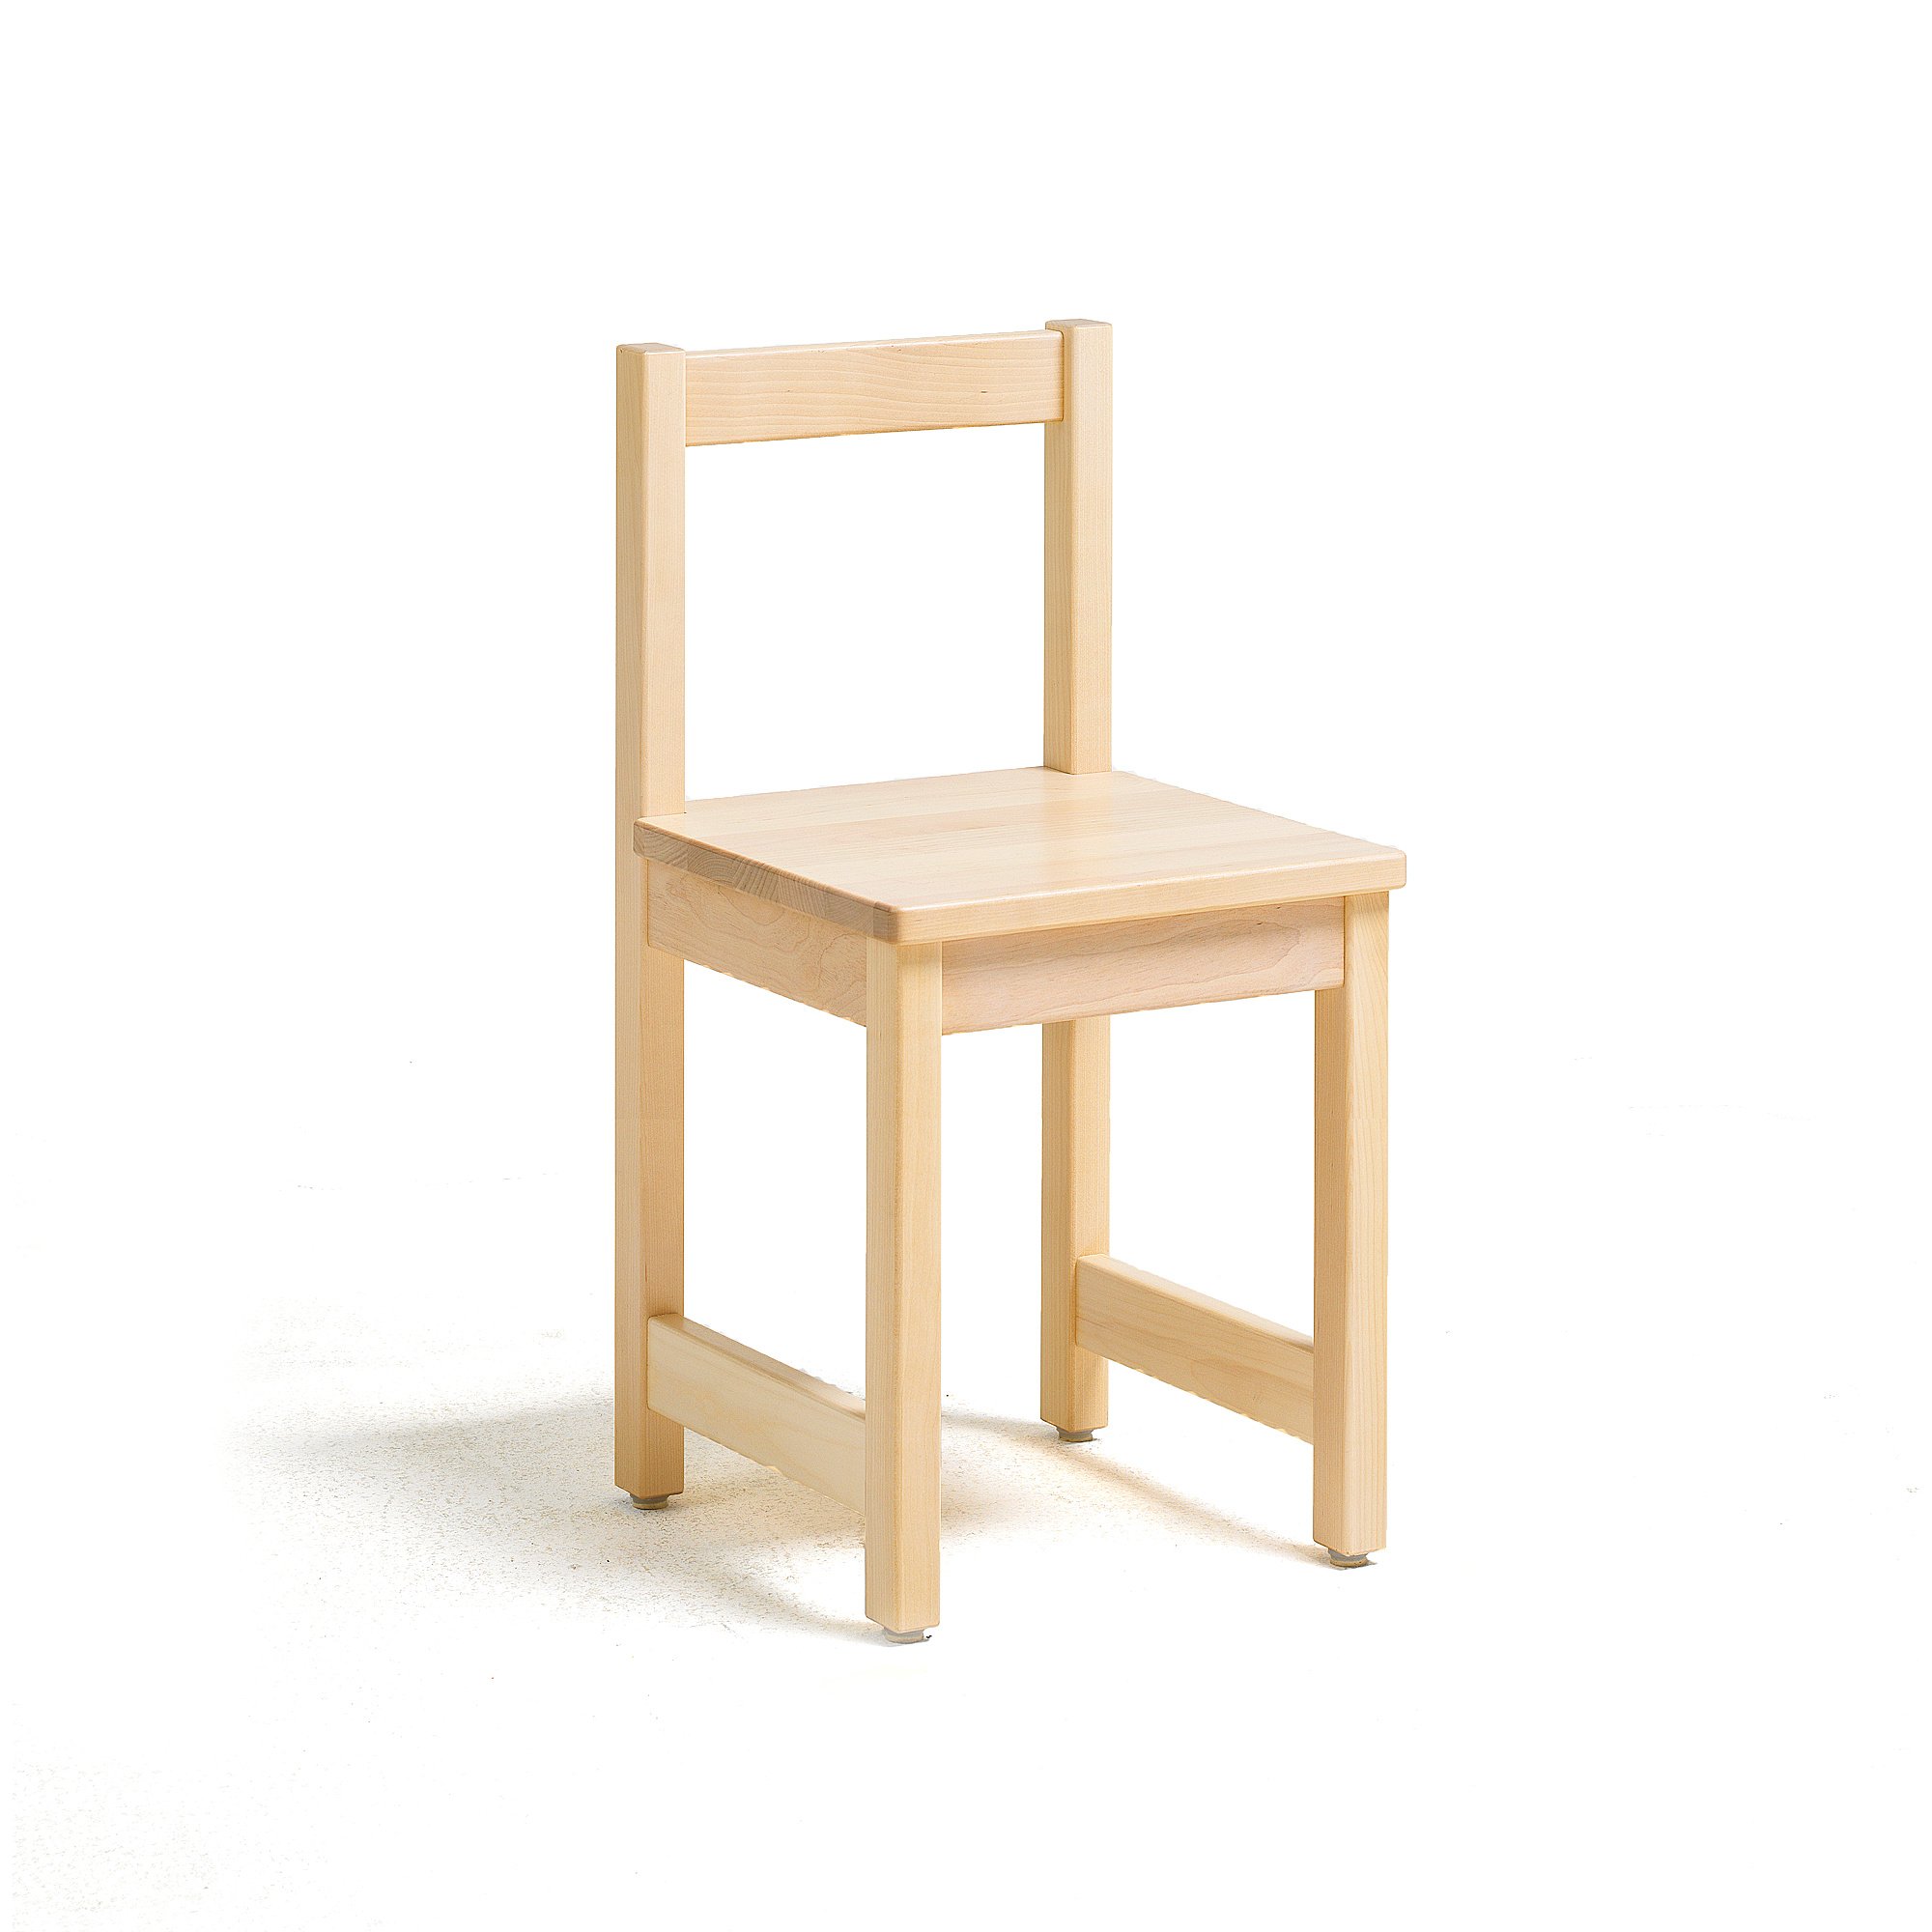 Dětská židle TESSA, výška 390 mm, bříza